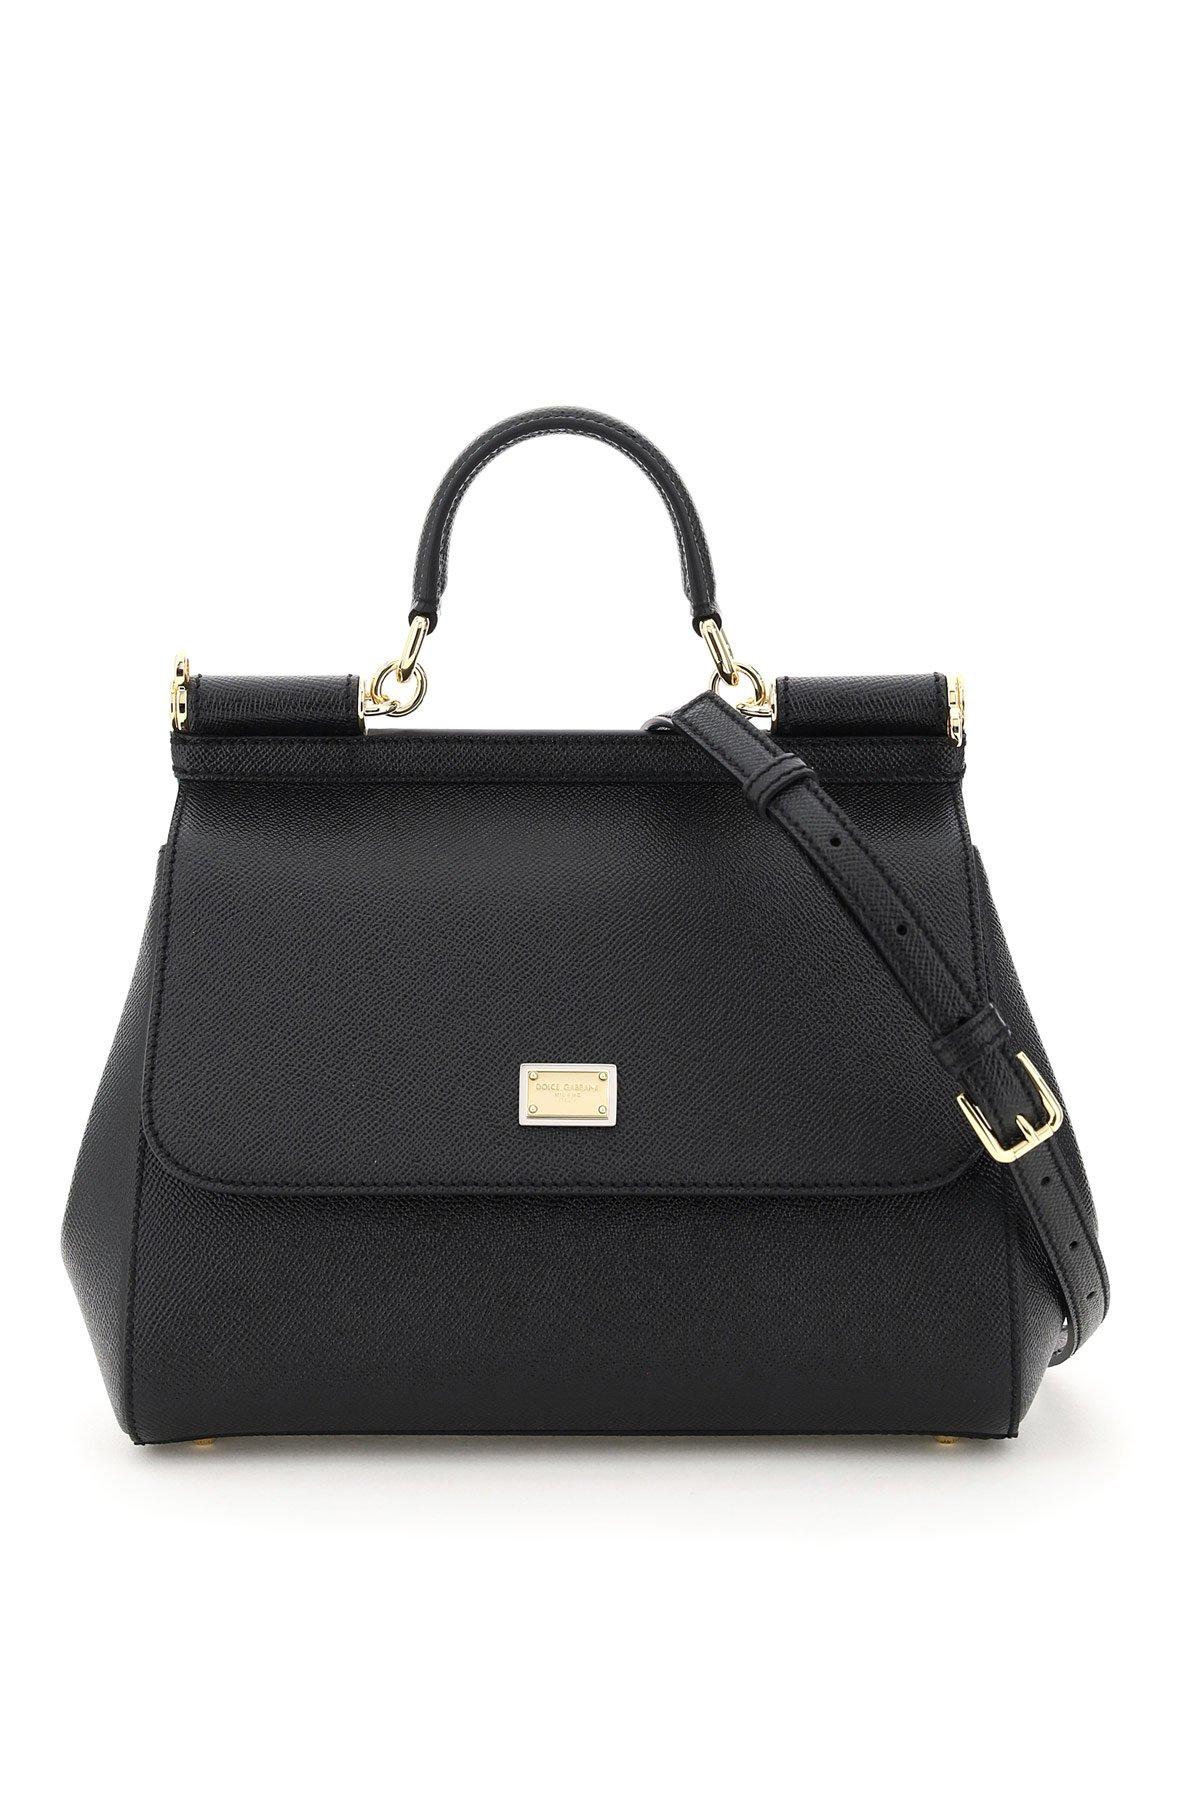 Dolce & Gabbana Medium Sicily Bag in Black